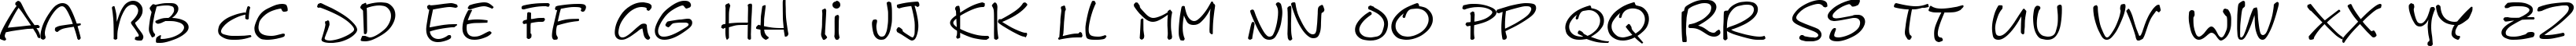 Пример написания английского алфавита шрифтом Scribble Regular